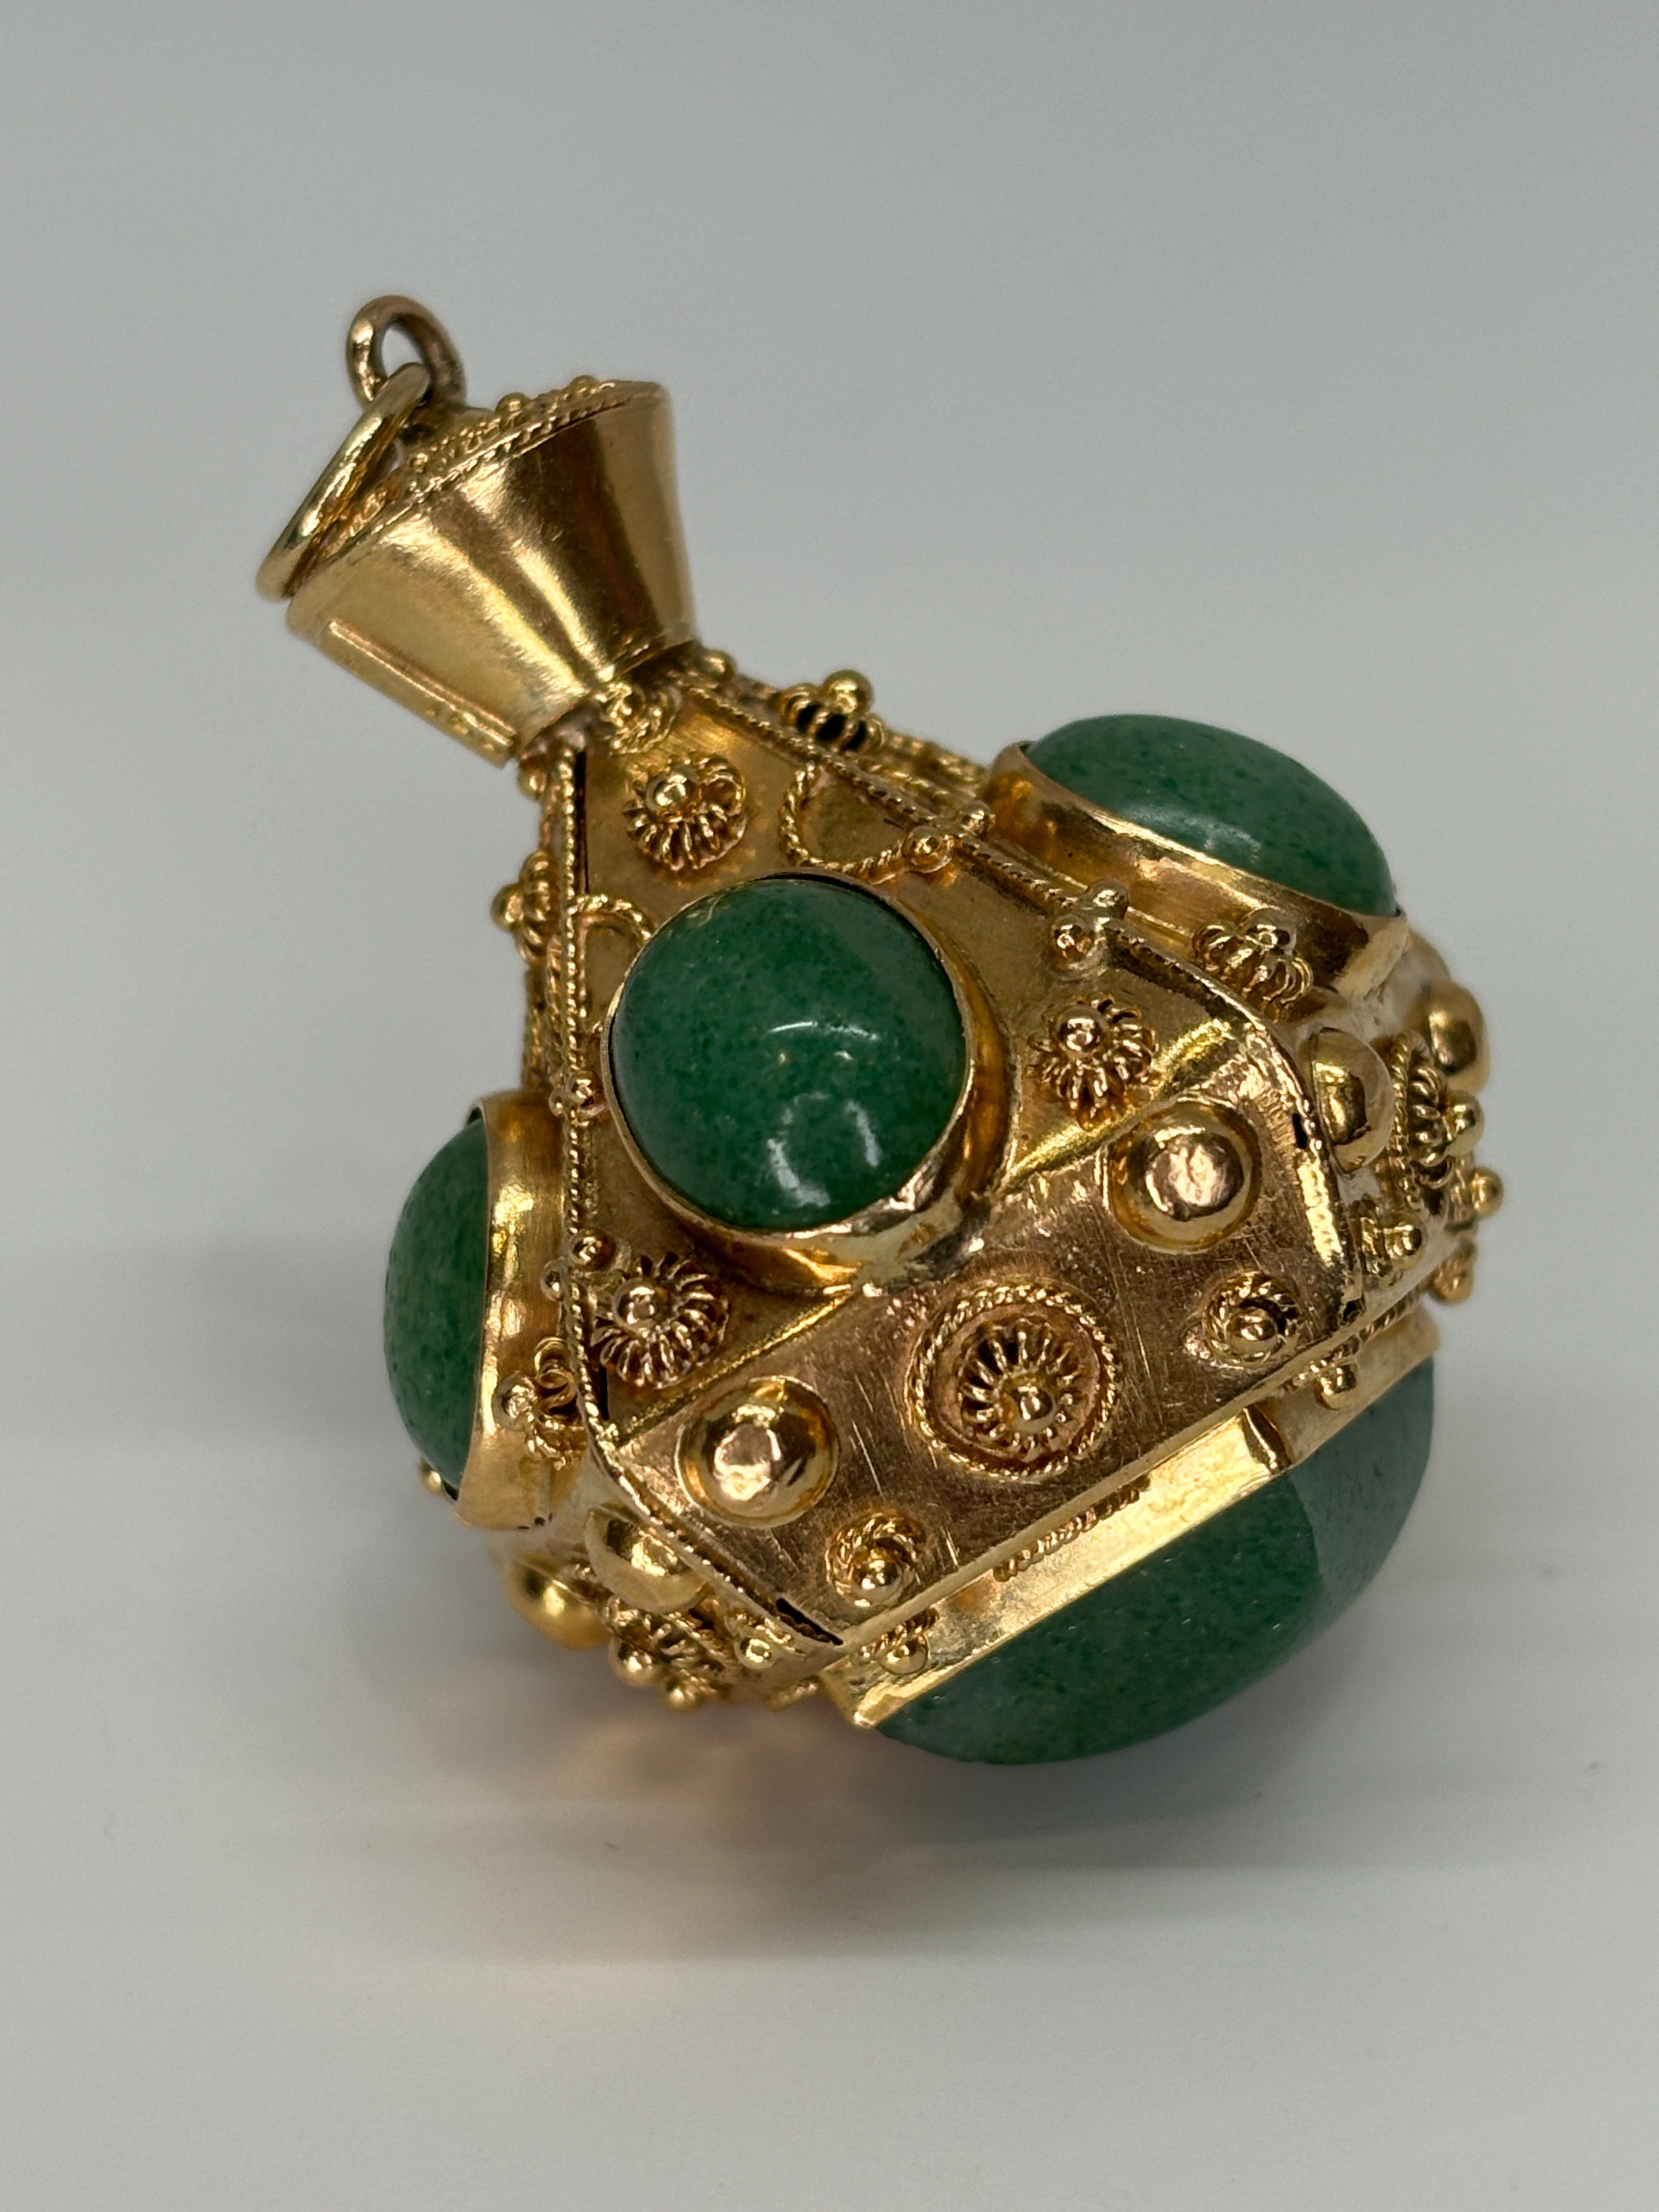 Dieser italienische Charme aus 18-karätigem Gold ist verziert mit  mit lebhaftem grünem Aventurin inmitten von Drahtgeflecht und Granulat aus der etruskischen Renaissance. Das verschnörkelte Vintage-Stück wurde höchstwahrscheinlich zuerst auf der